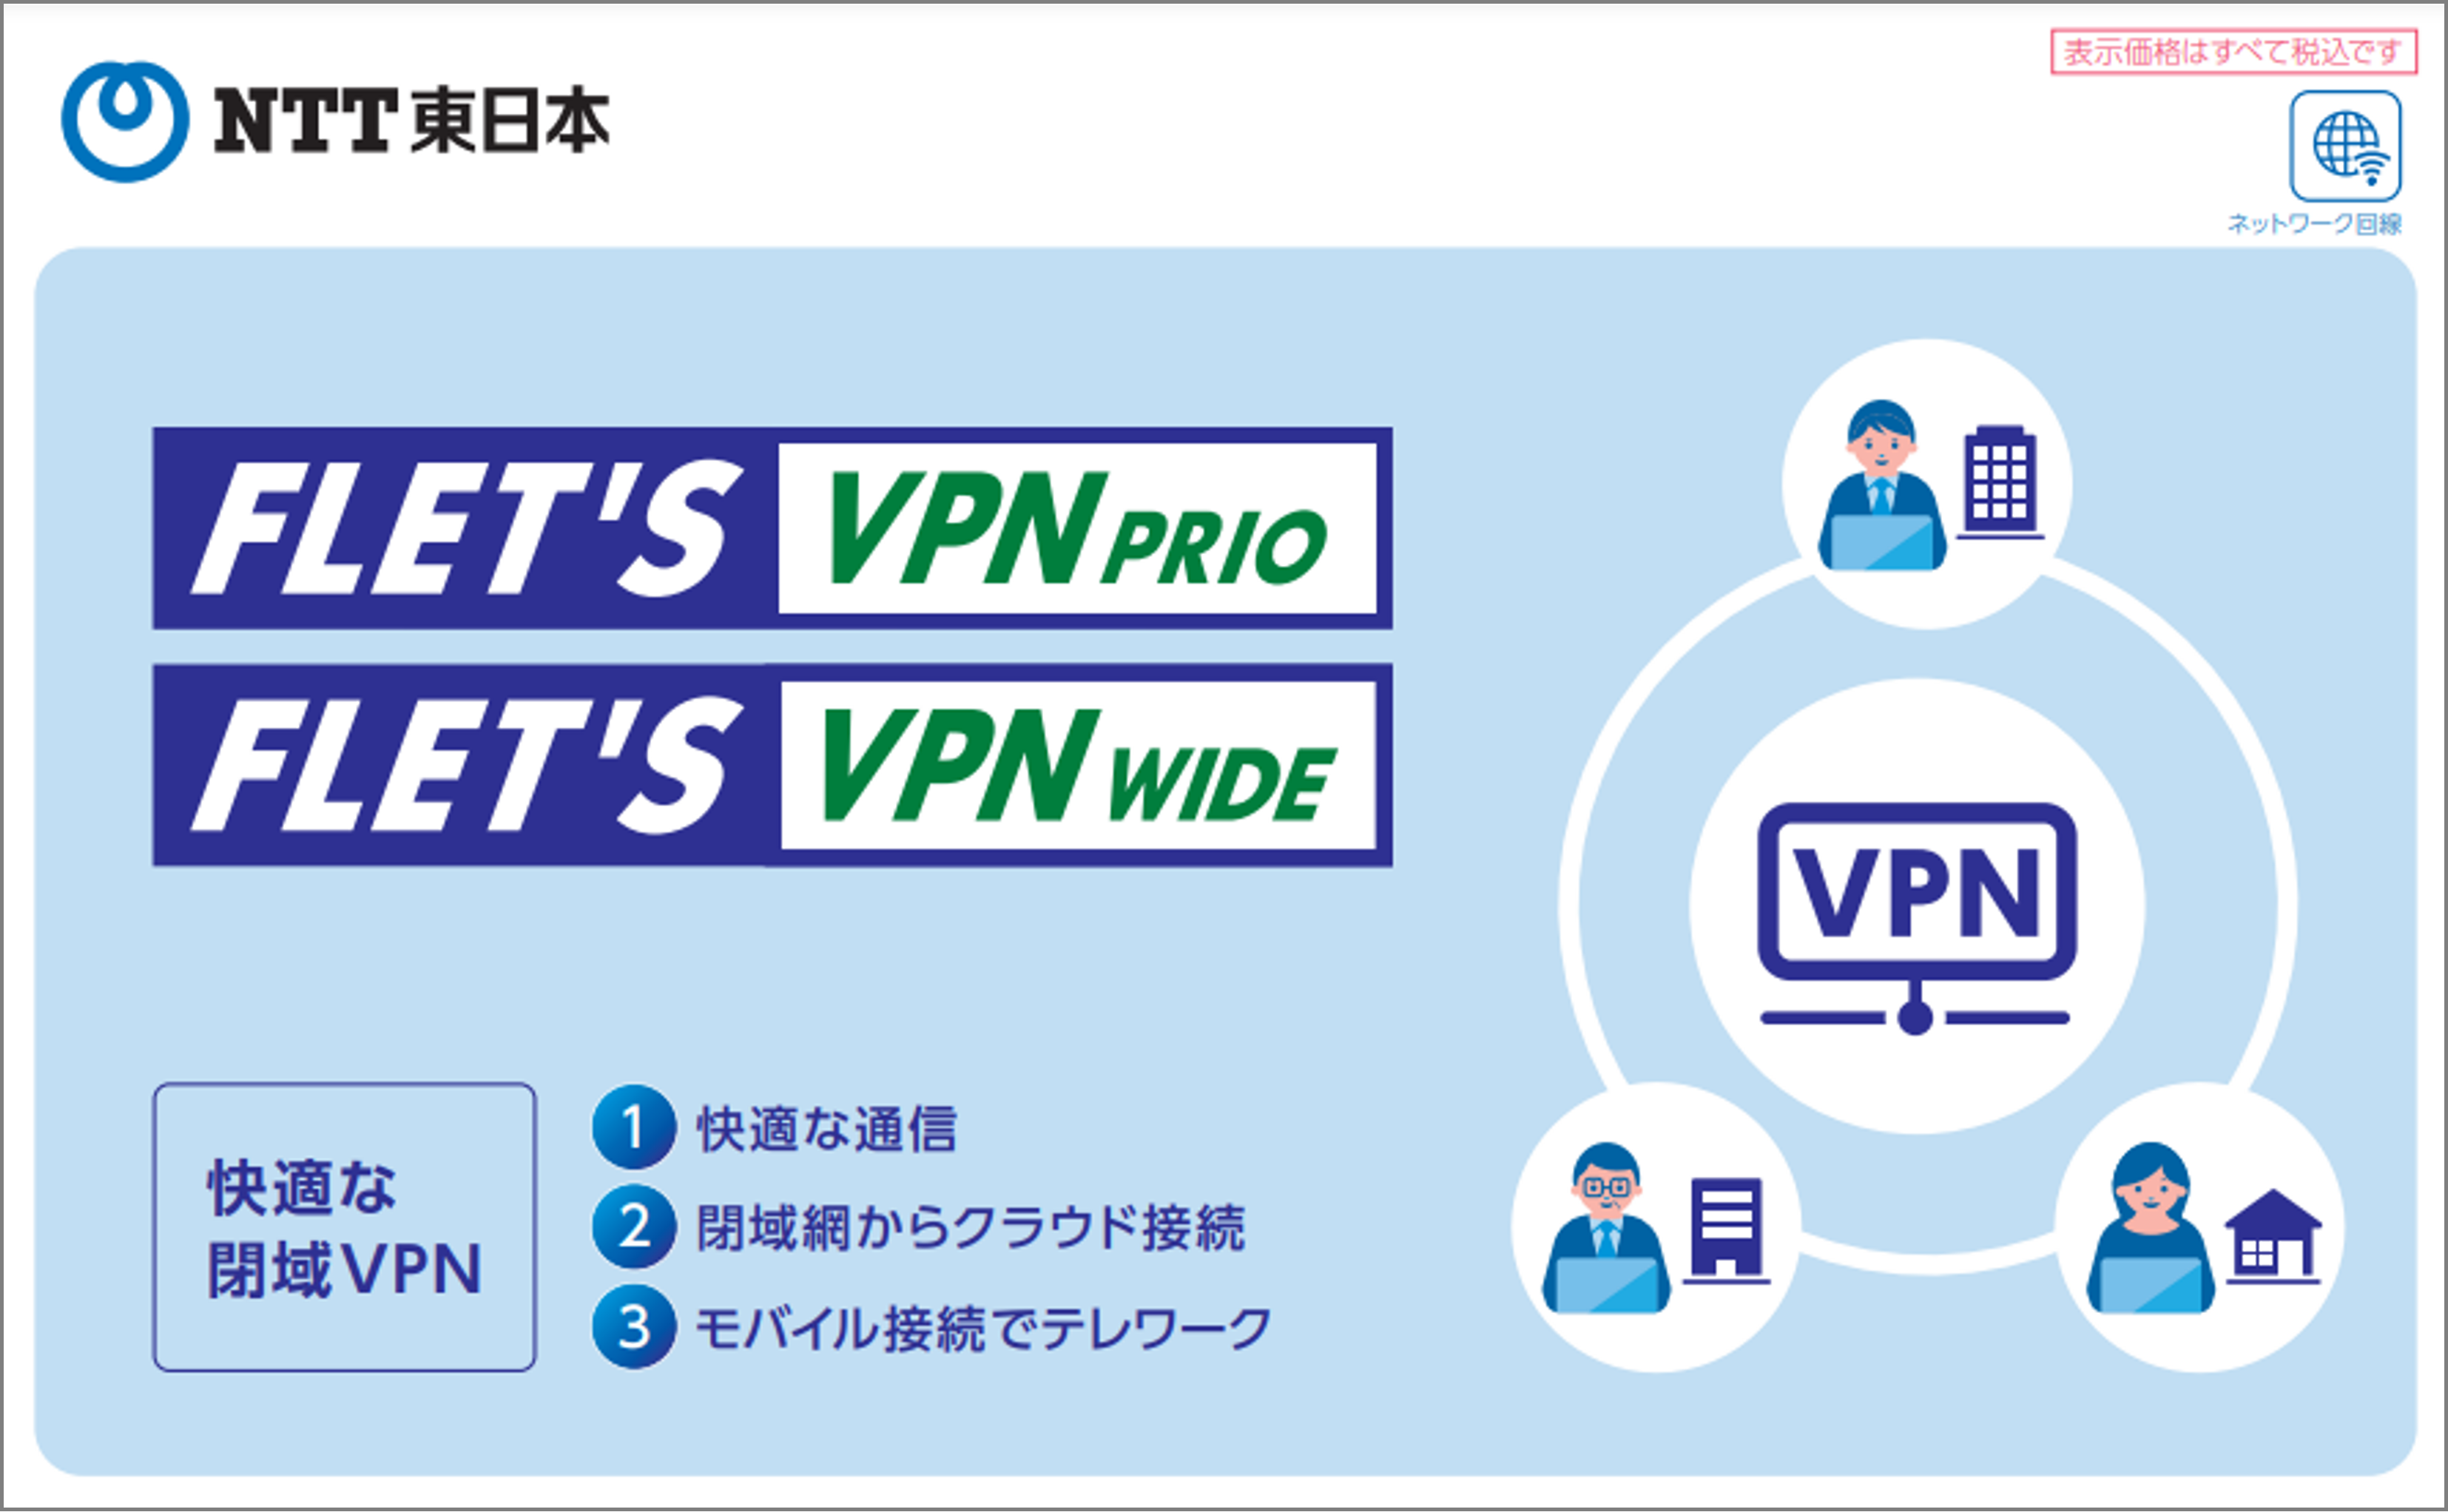 フレッツ・VPN ワイド　パンフレット